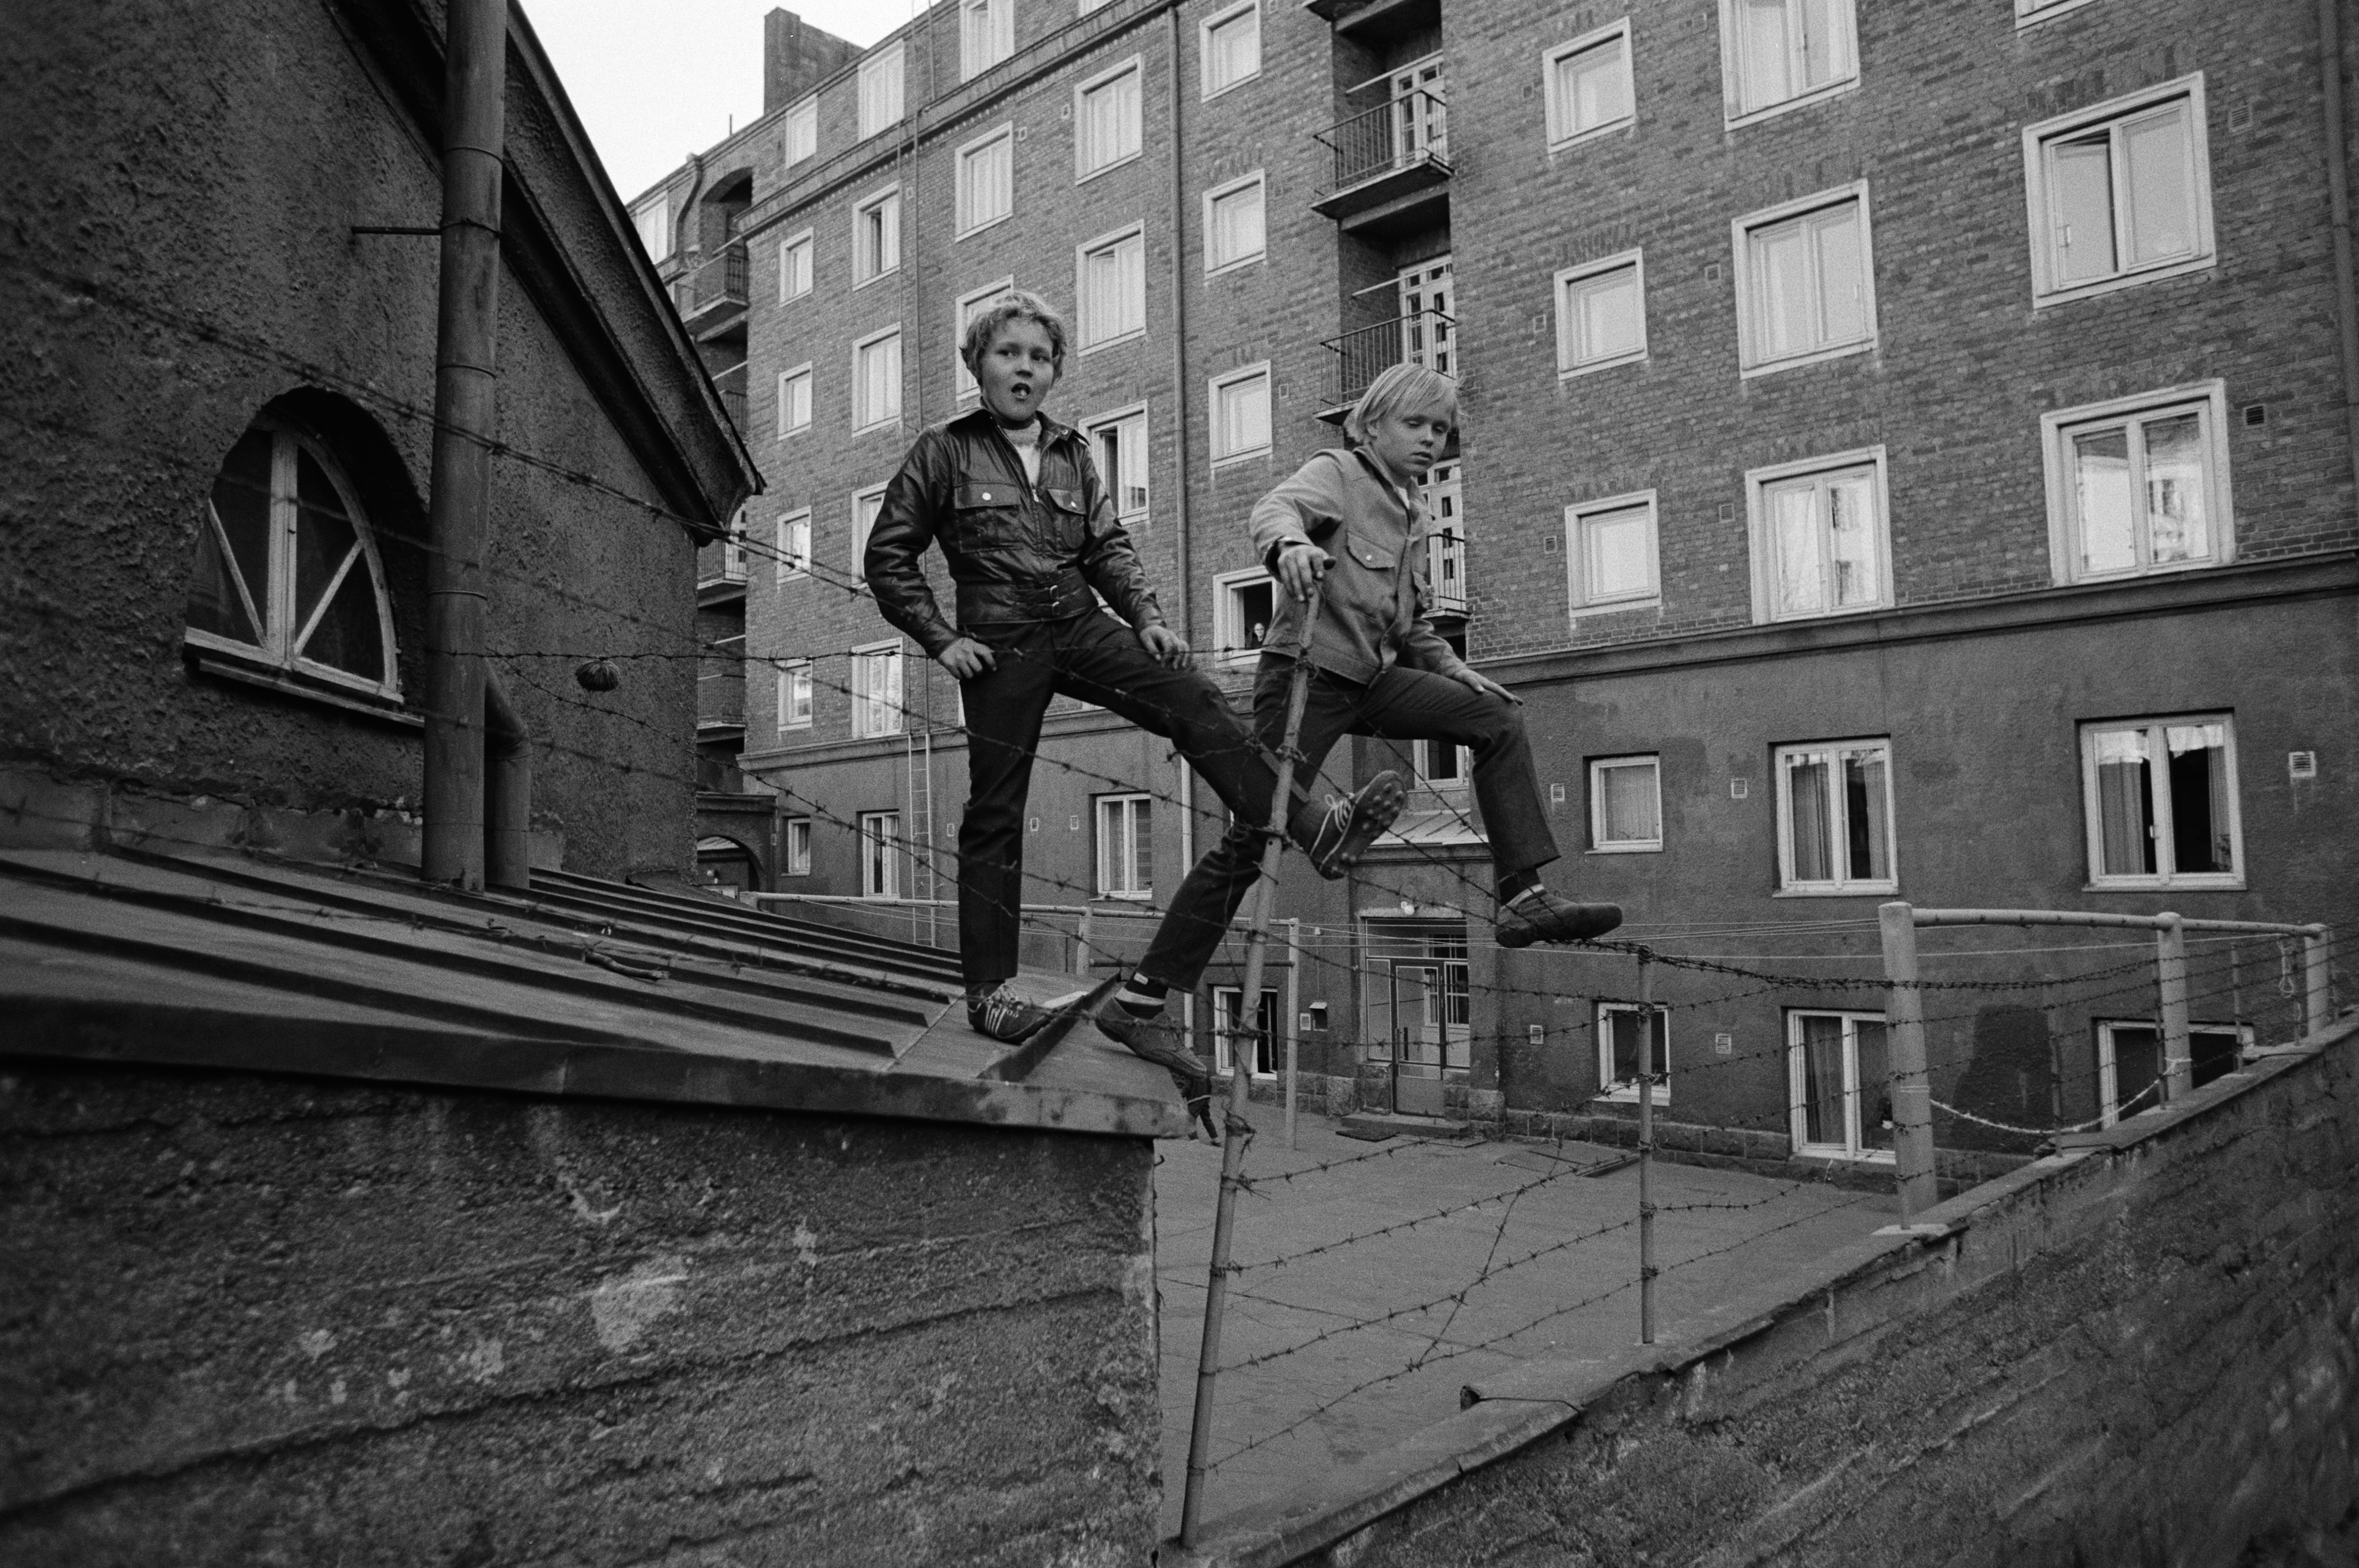 Kaksi poikaa seisomassa pihojen välisellä välipiikkilanka-aidalla Torkkelinmäessä Kalliossa. Fleminginkatu 11, 13. Kevät 1970.